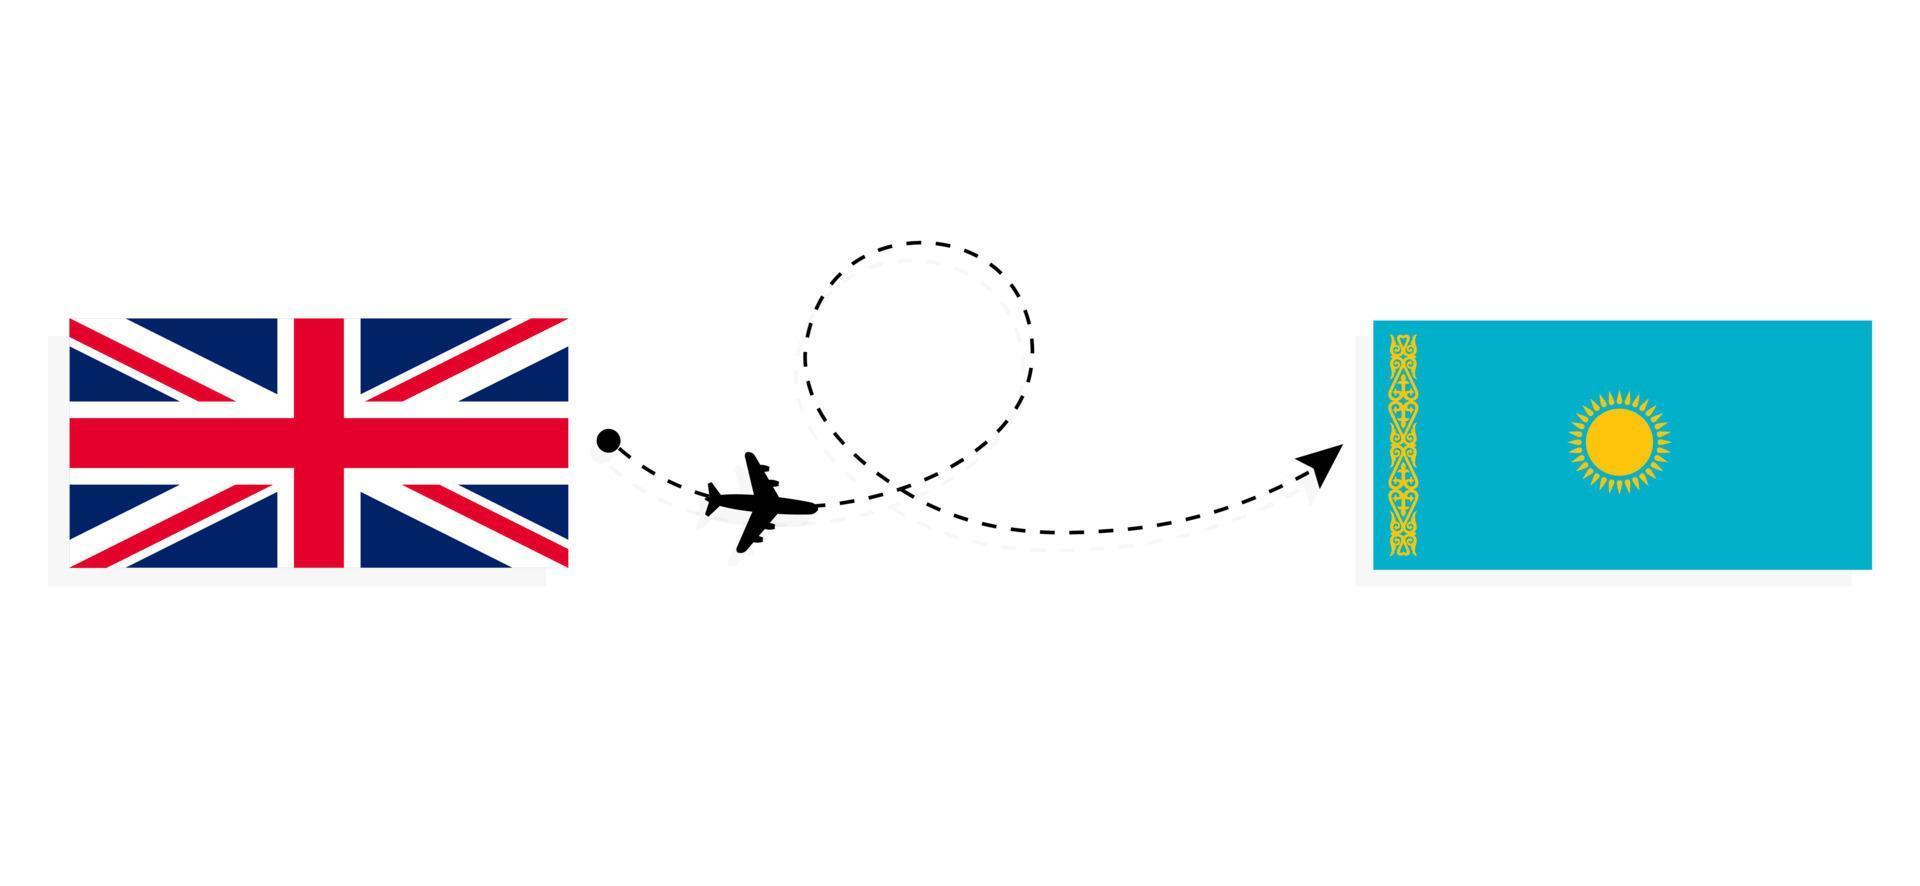 flyg och resor från Storbritannien till Kazakstan med passagerarflygplan vektor